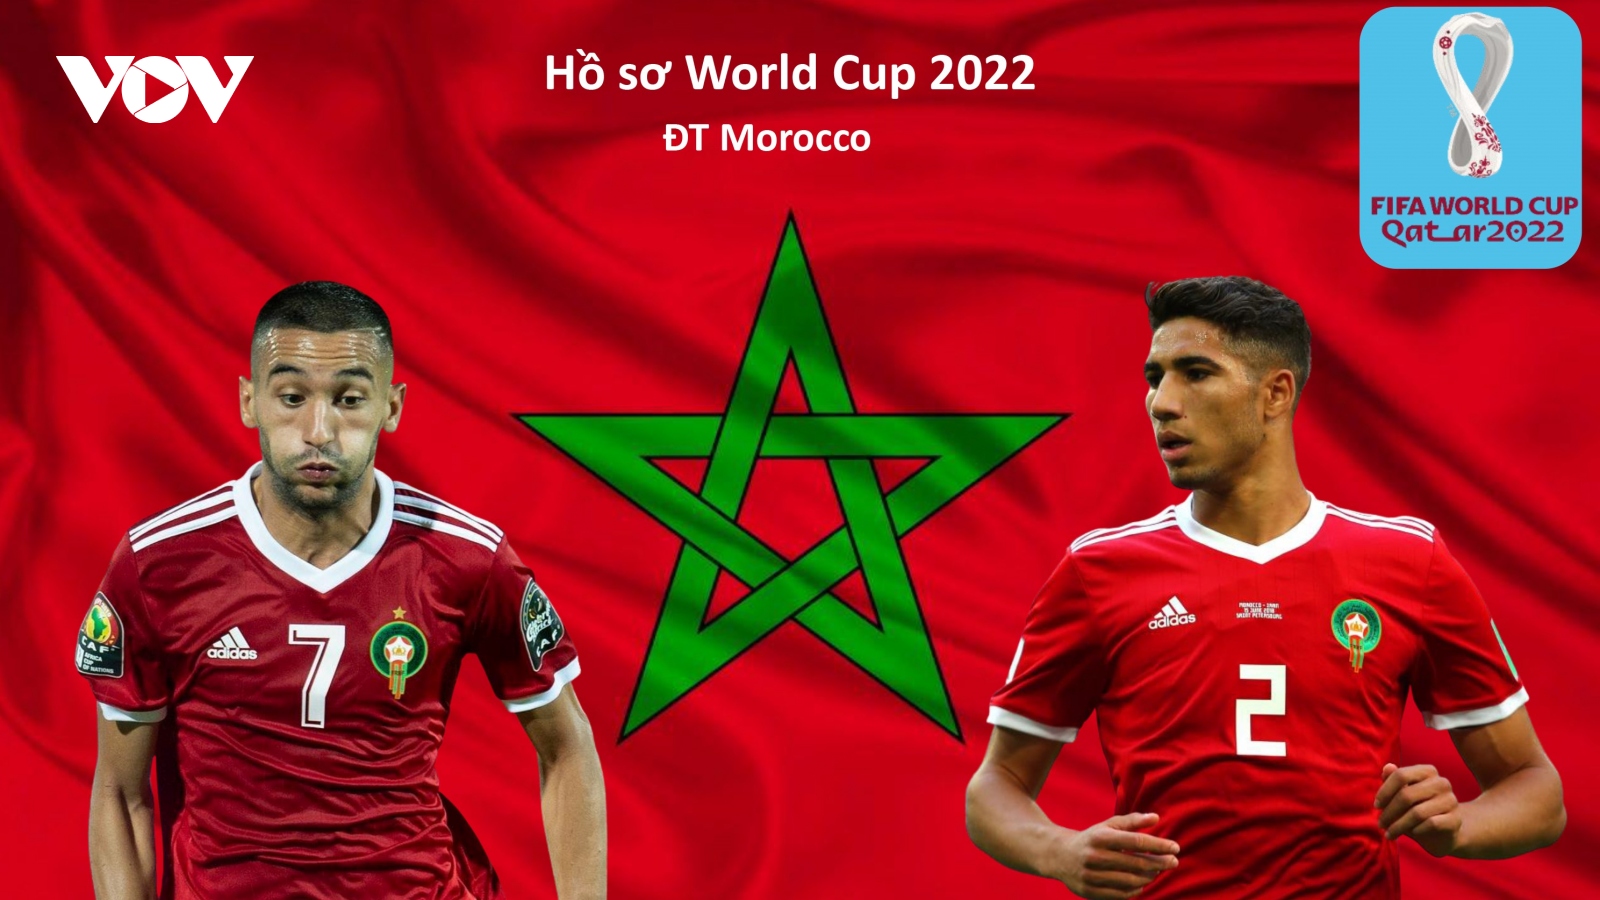 
        Hồ sơ các ĐT dự VCK World Cup 2022: Đội tuyển Morocco
                          
                      